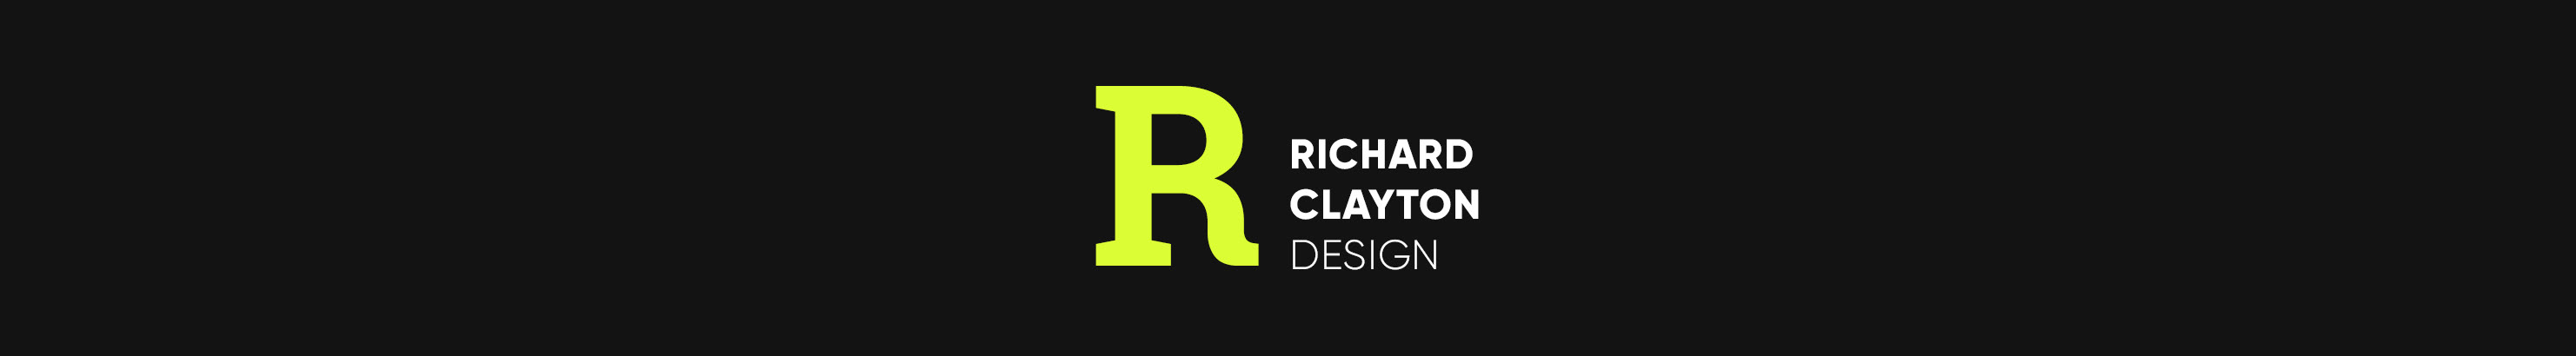 Richard Clayton profil başlığı